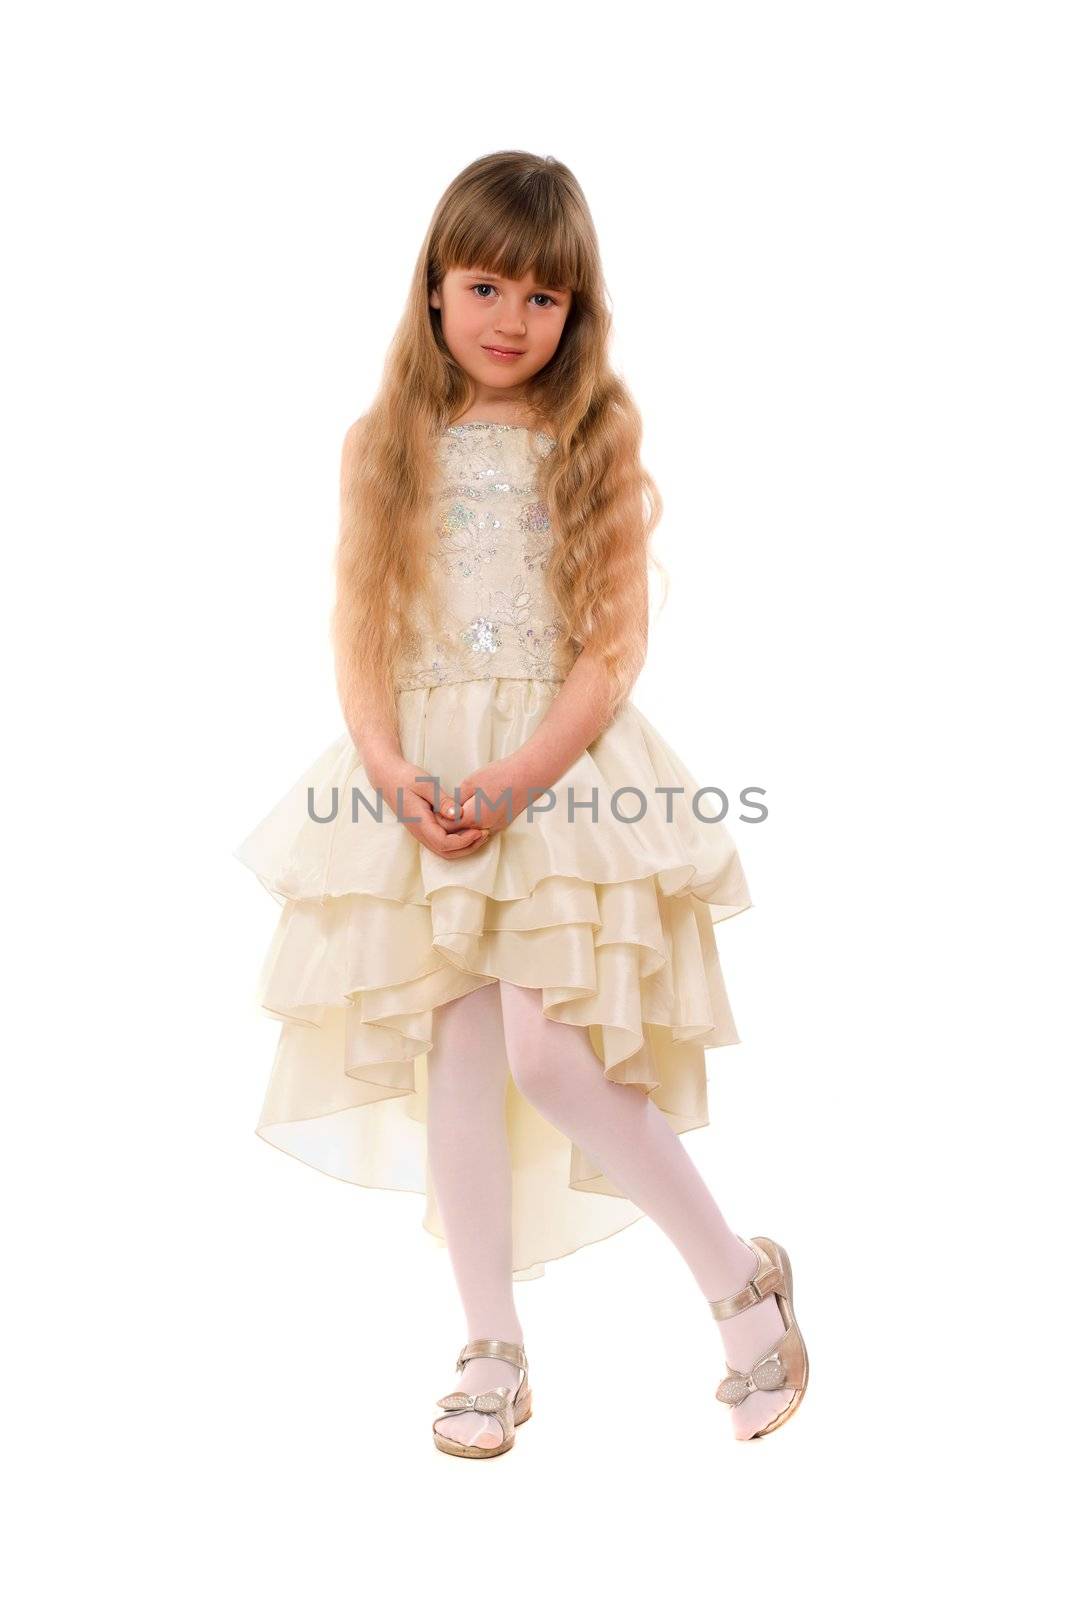 Cute little girl in a beige dress by acidgrey